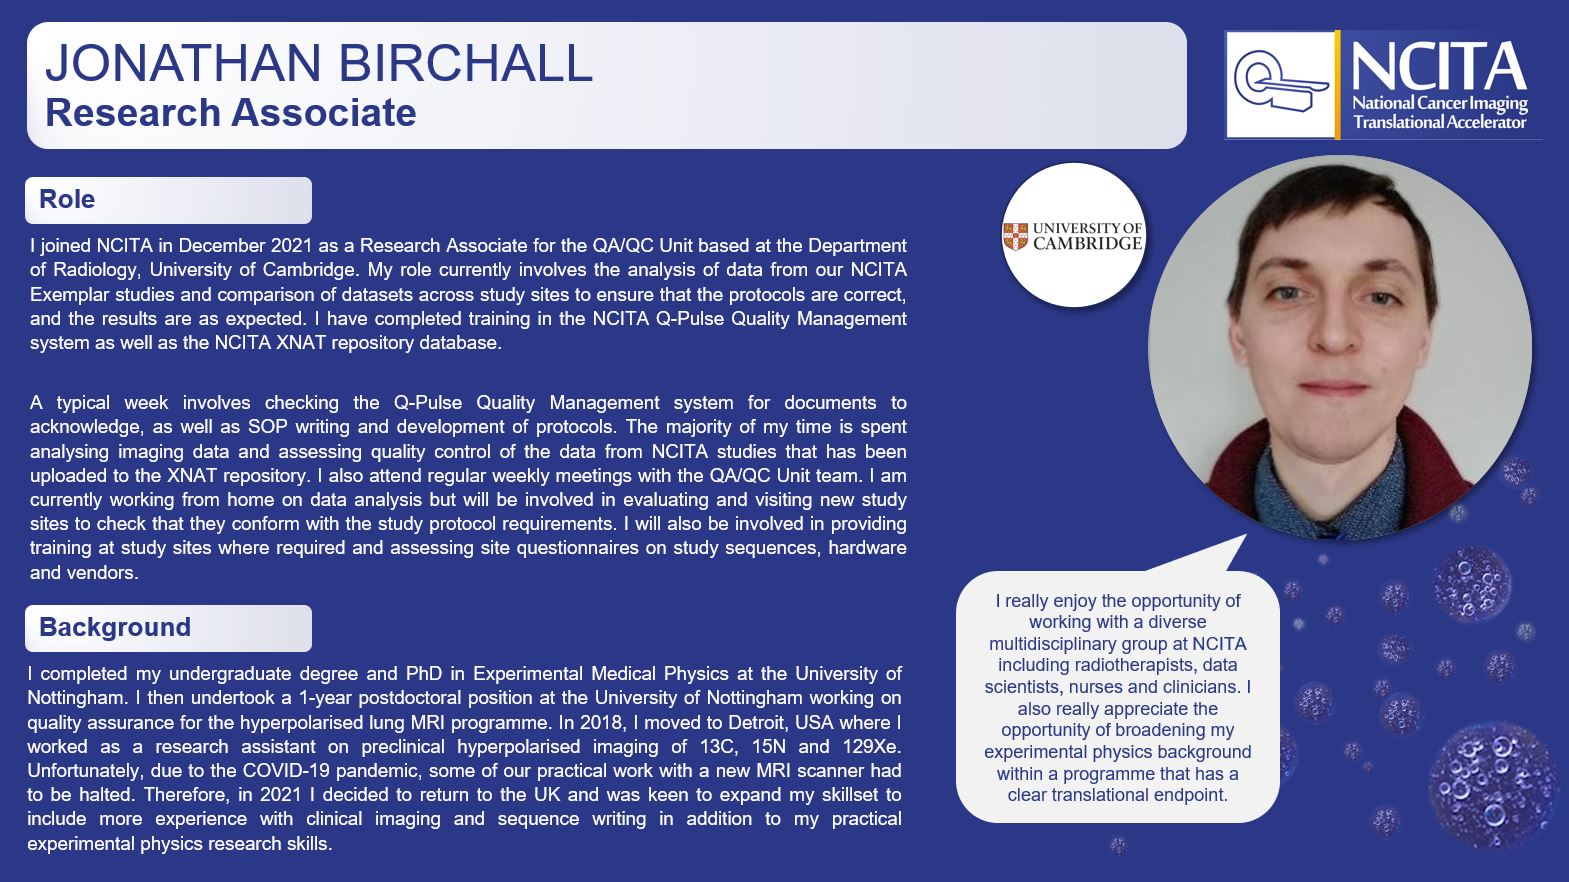 Jonathan Birchall - NCITA Research Associate